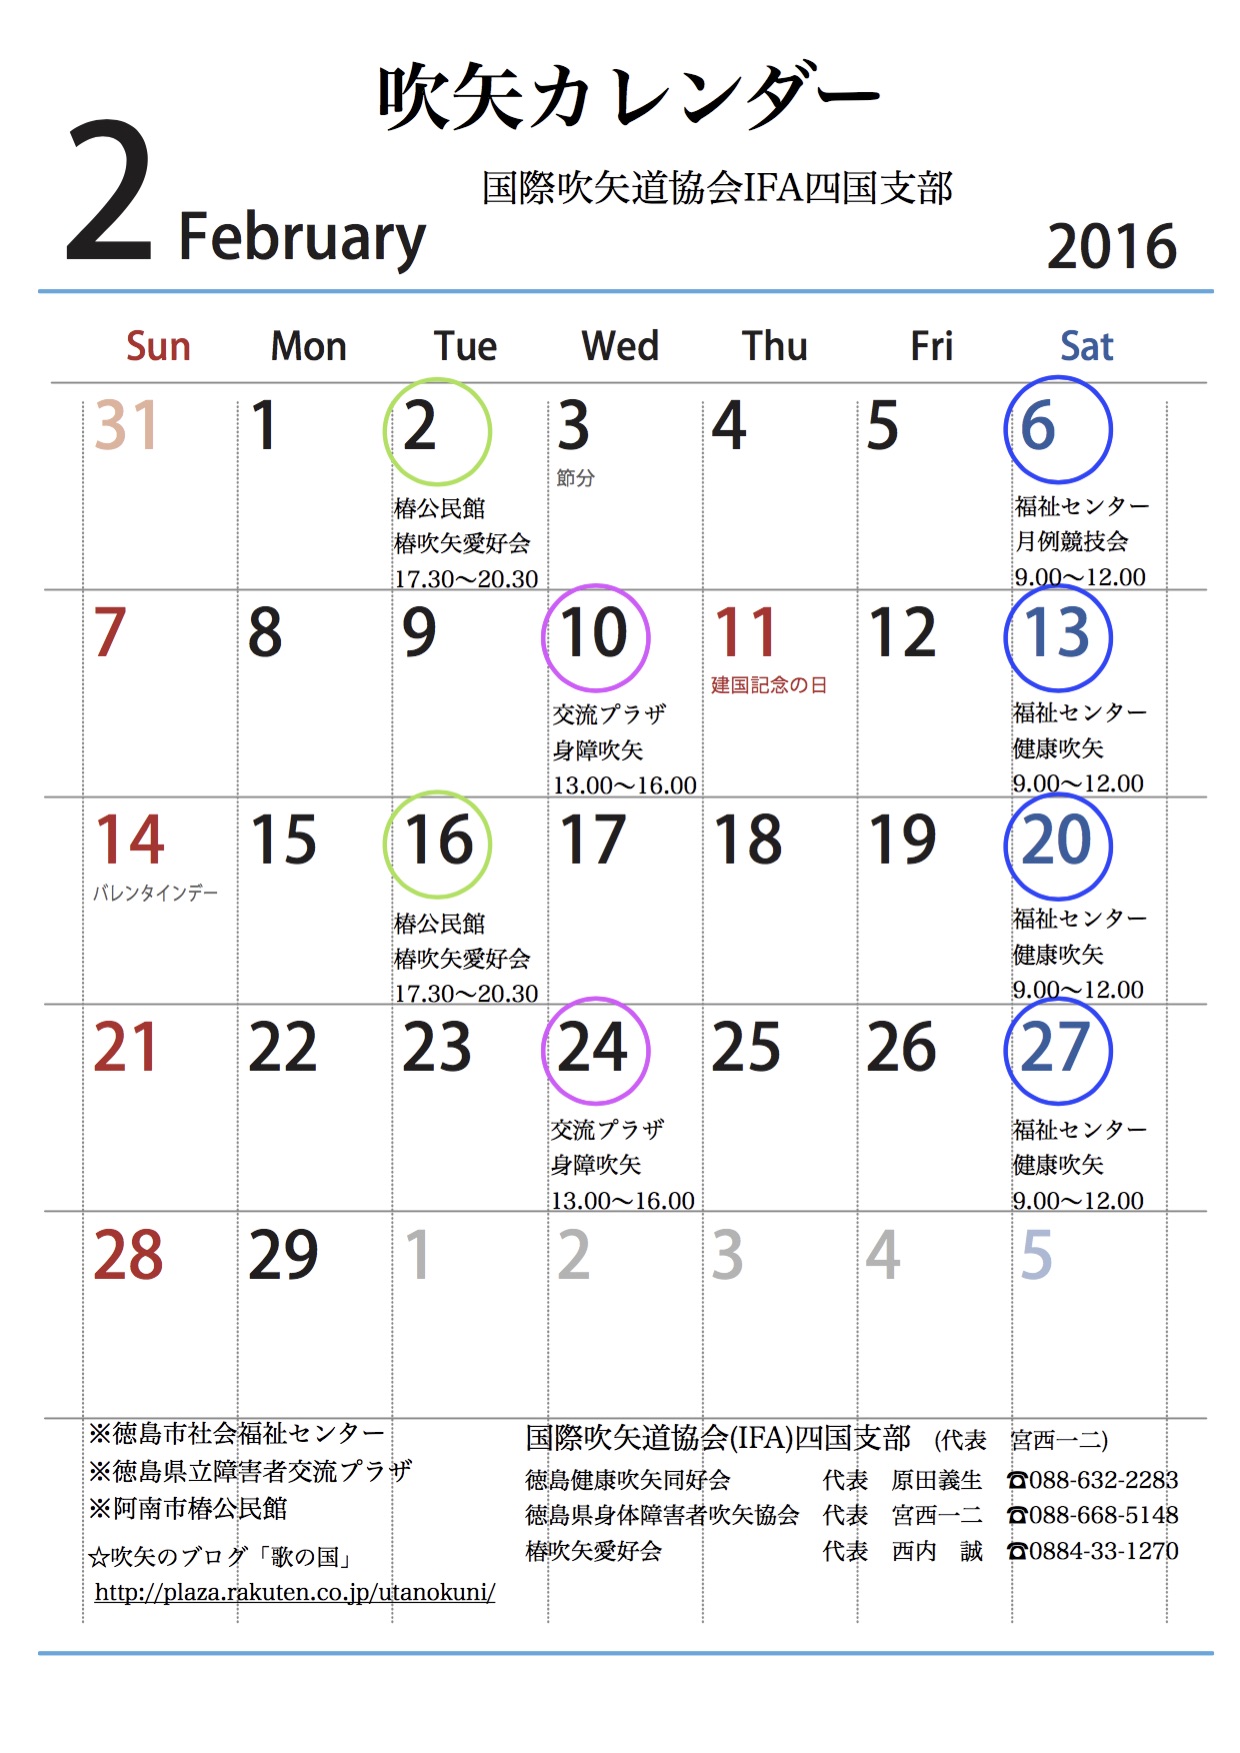 平成28年2月の吹矢カレンダー 歌の国 楽天ブログ